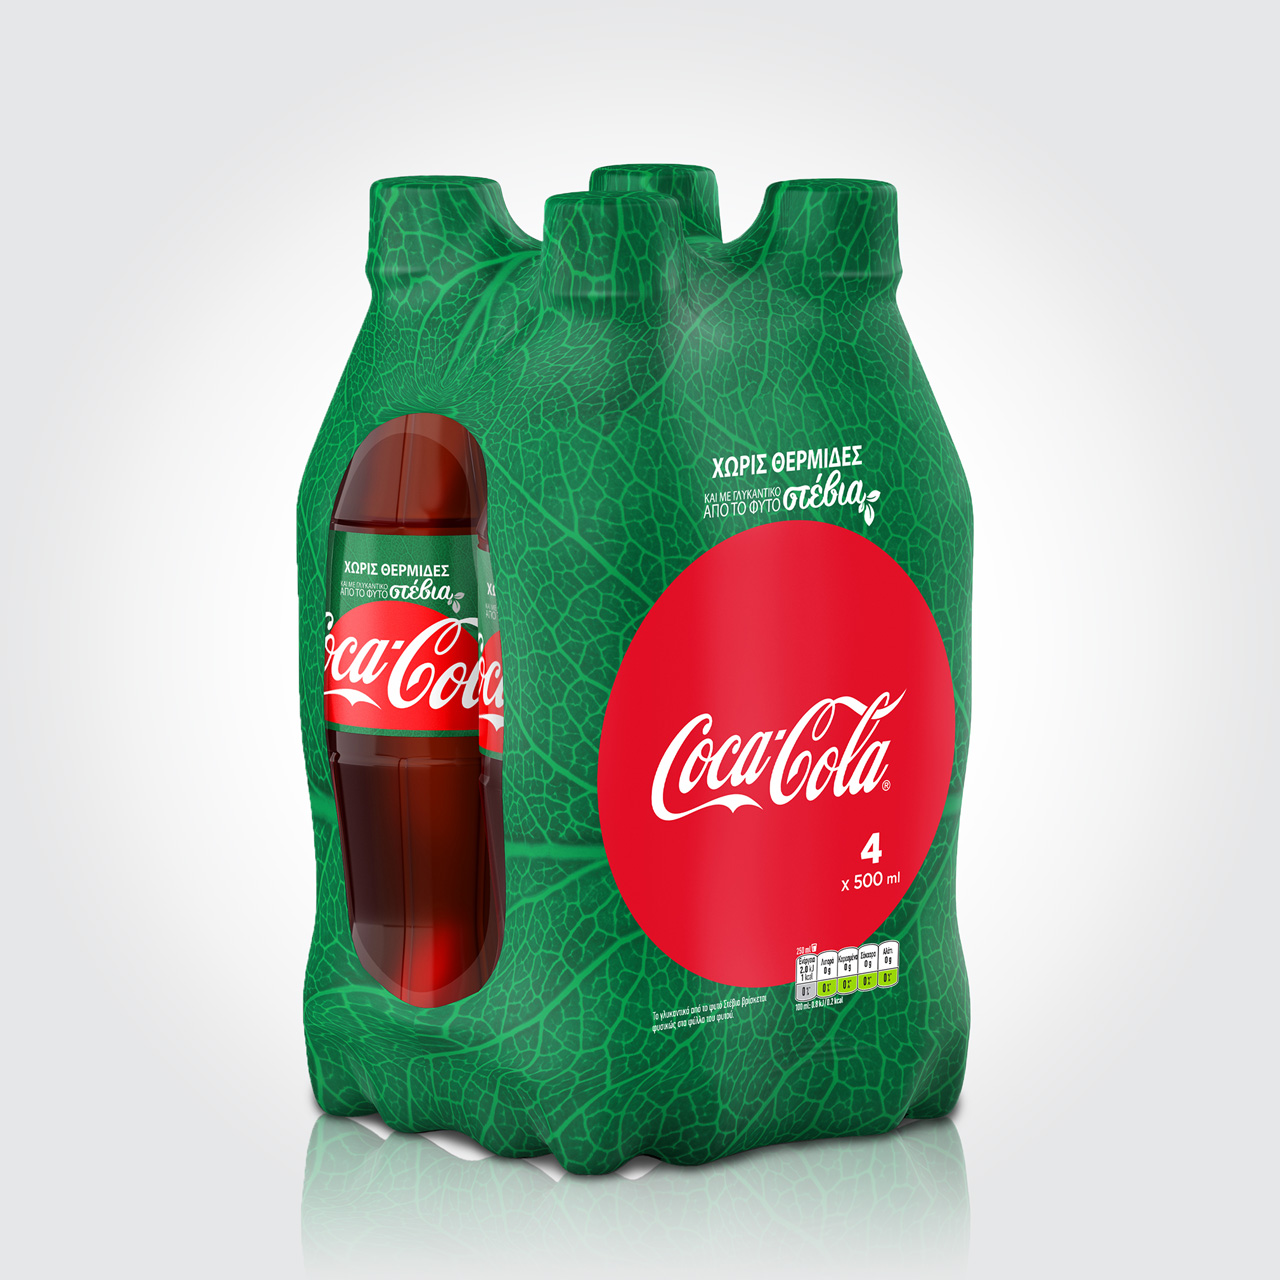 Coca-Cola Stevia redesign 4x500ml shrink wrap